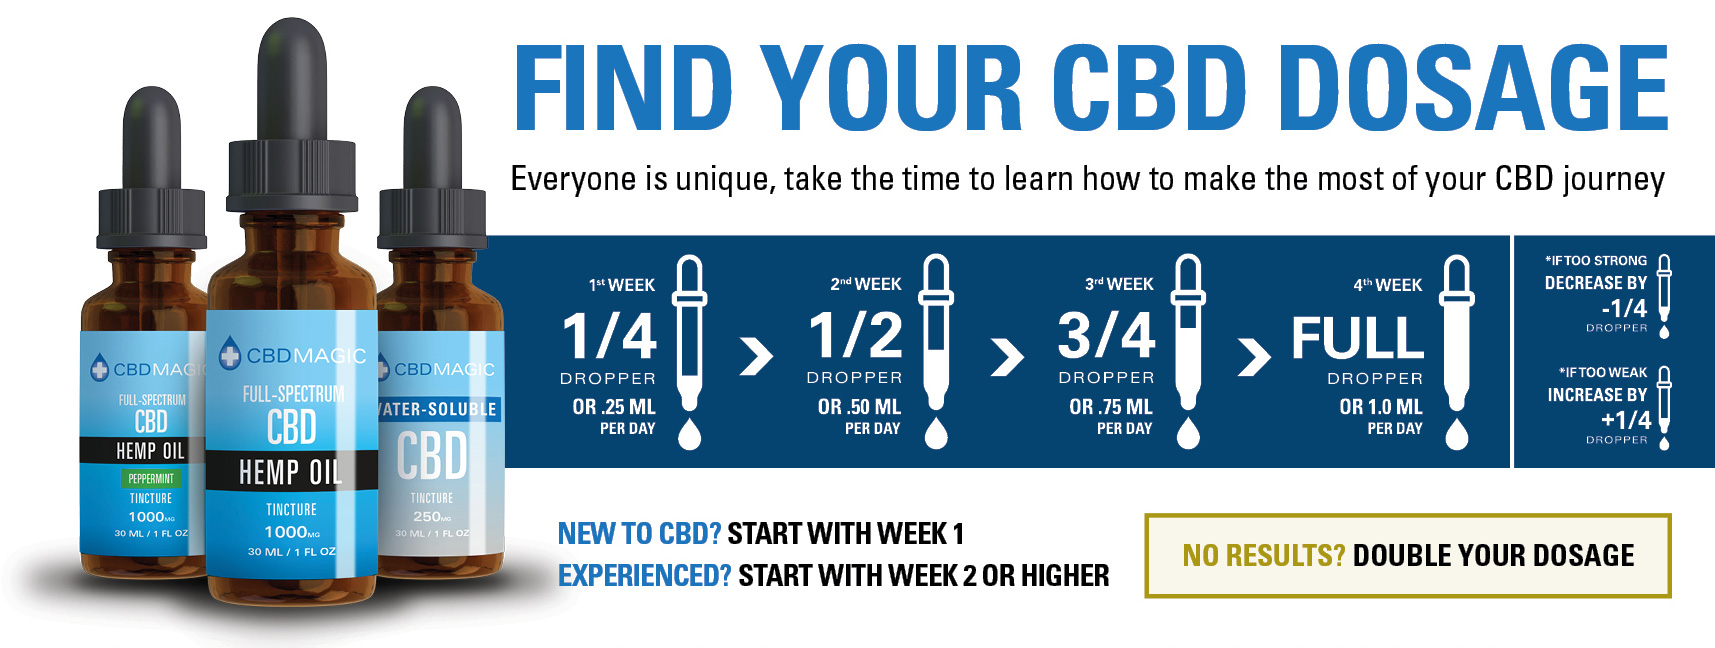 CBD Dosage Guide Canada